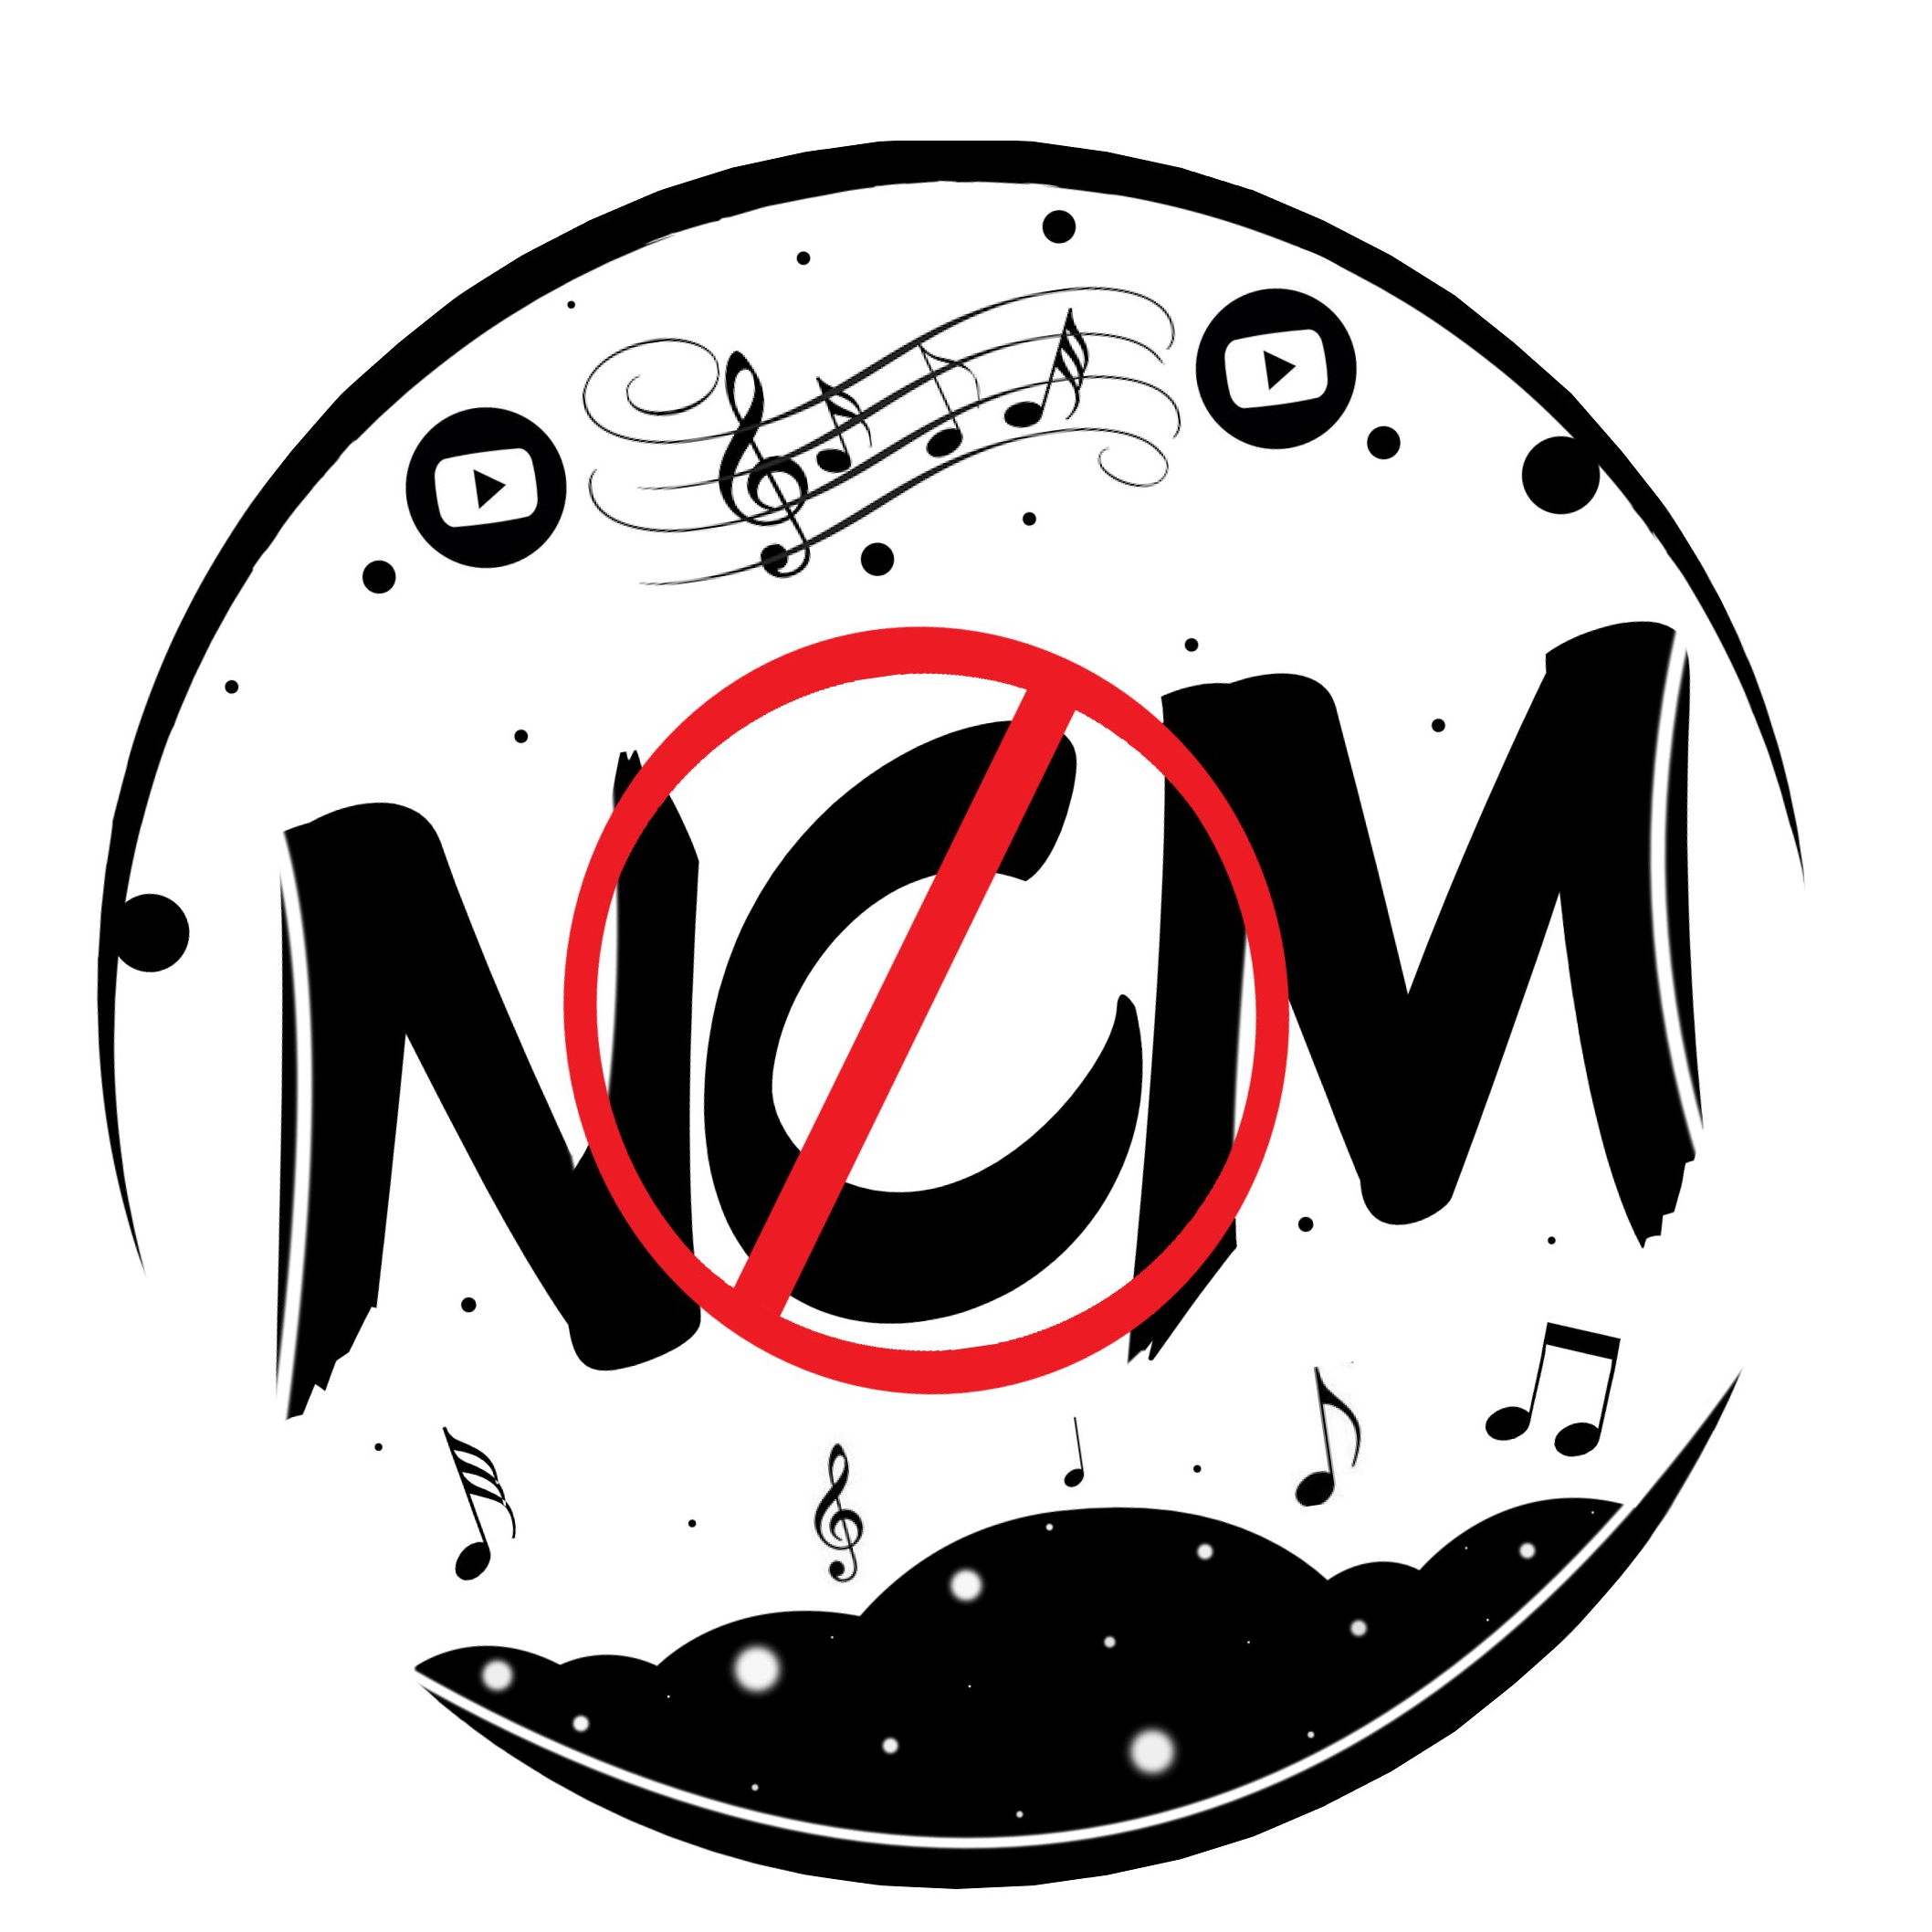 Сайт музыки без авторских. Музыкальное авторское право. Музыкальный логотип без авторских прав. Картинки без авторских прав музыка.